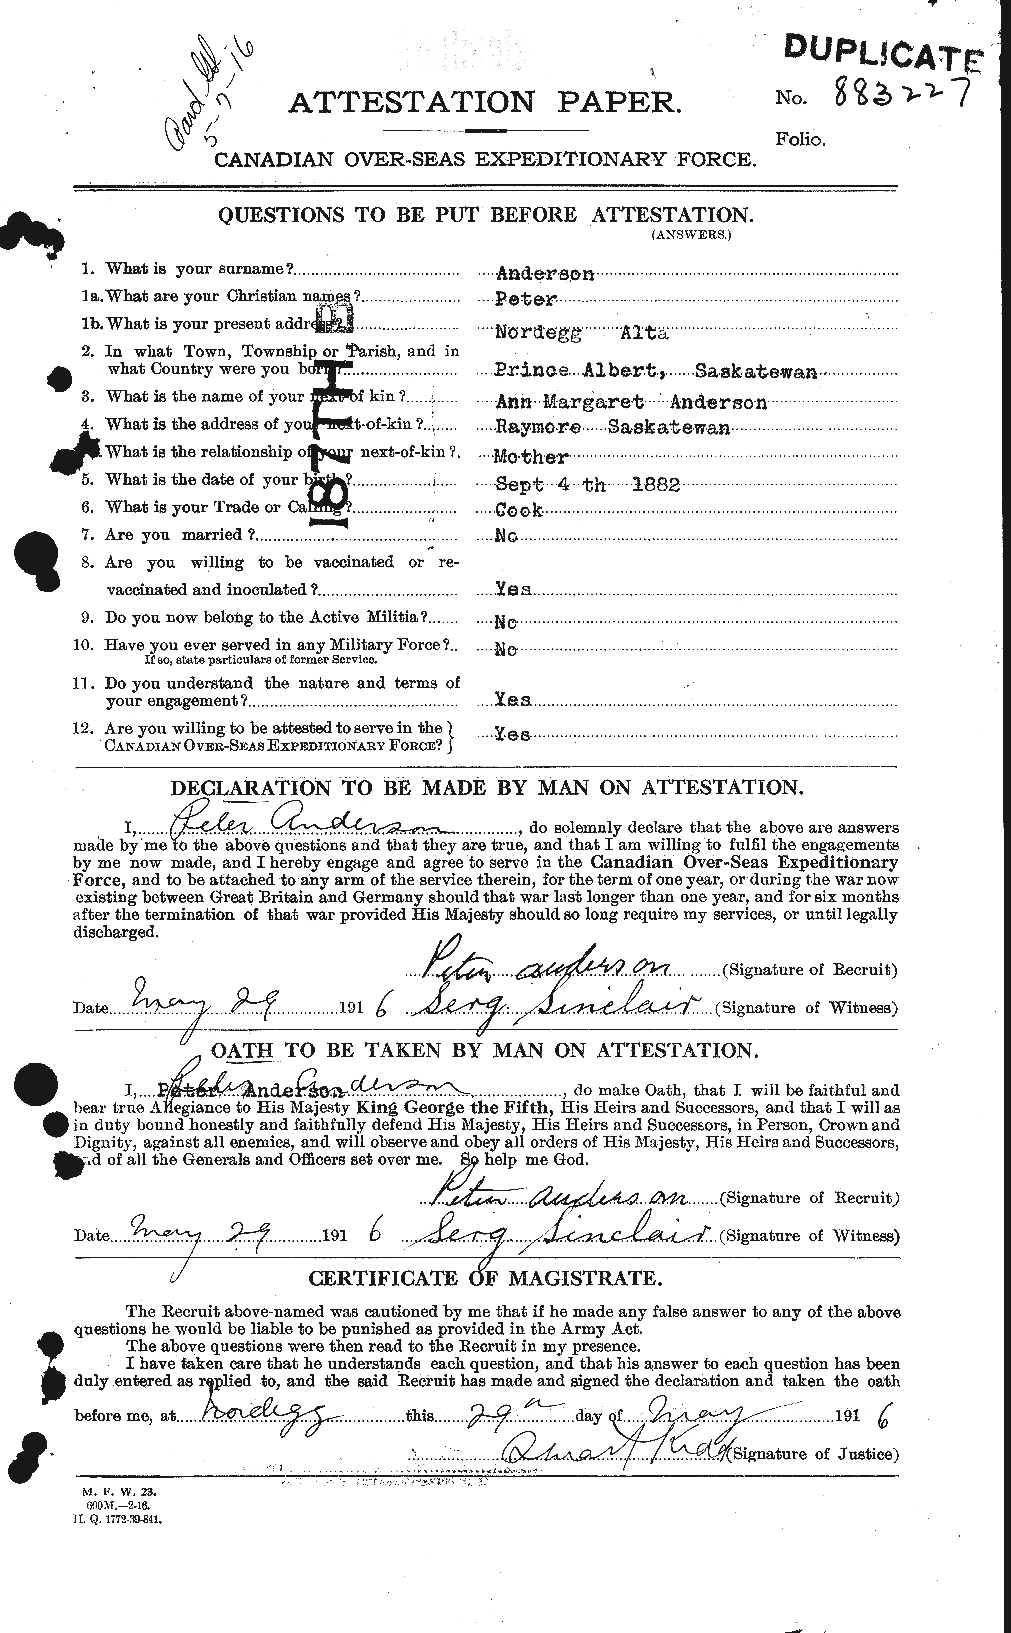 Dossiers du Personnel de la Première Guerre mondiale - CEC 207349a